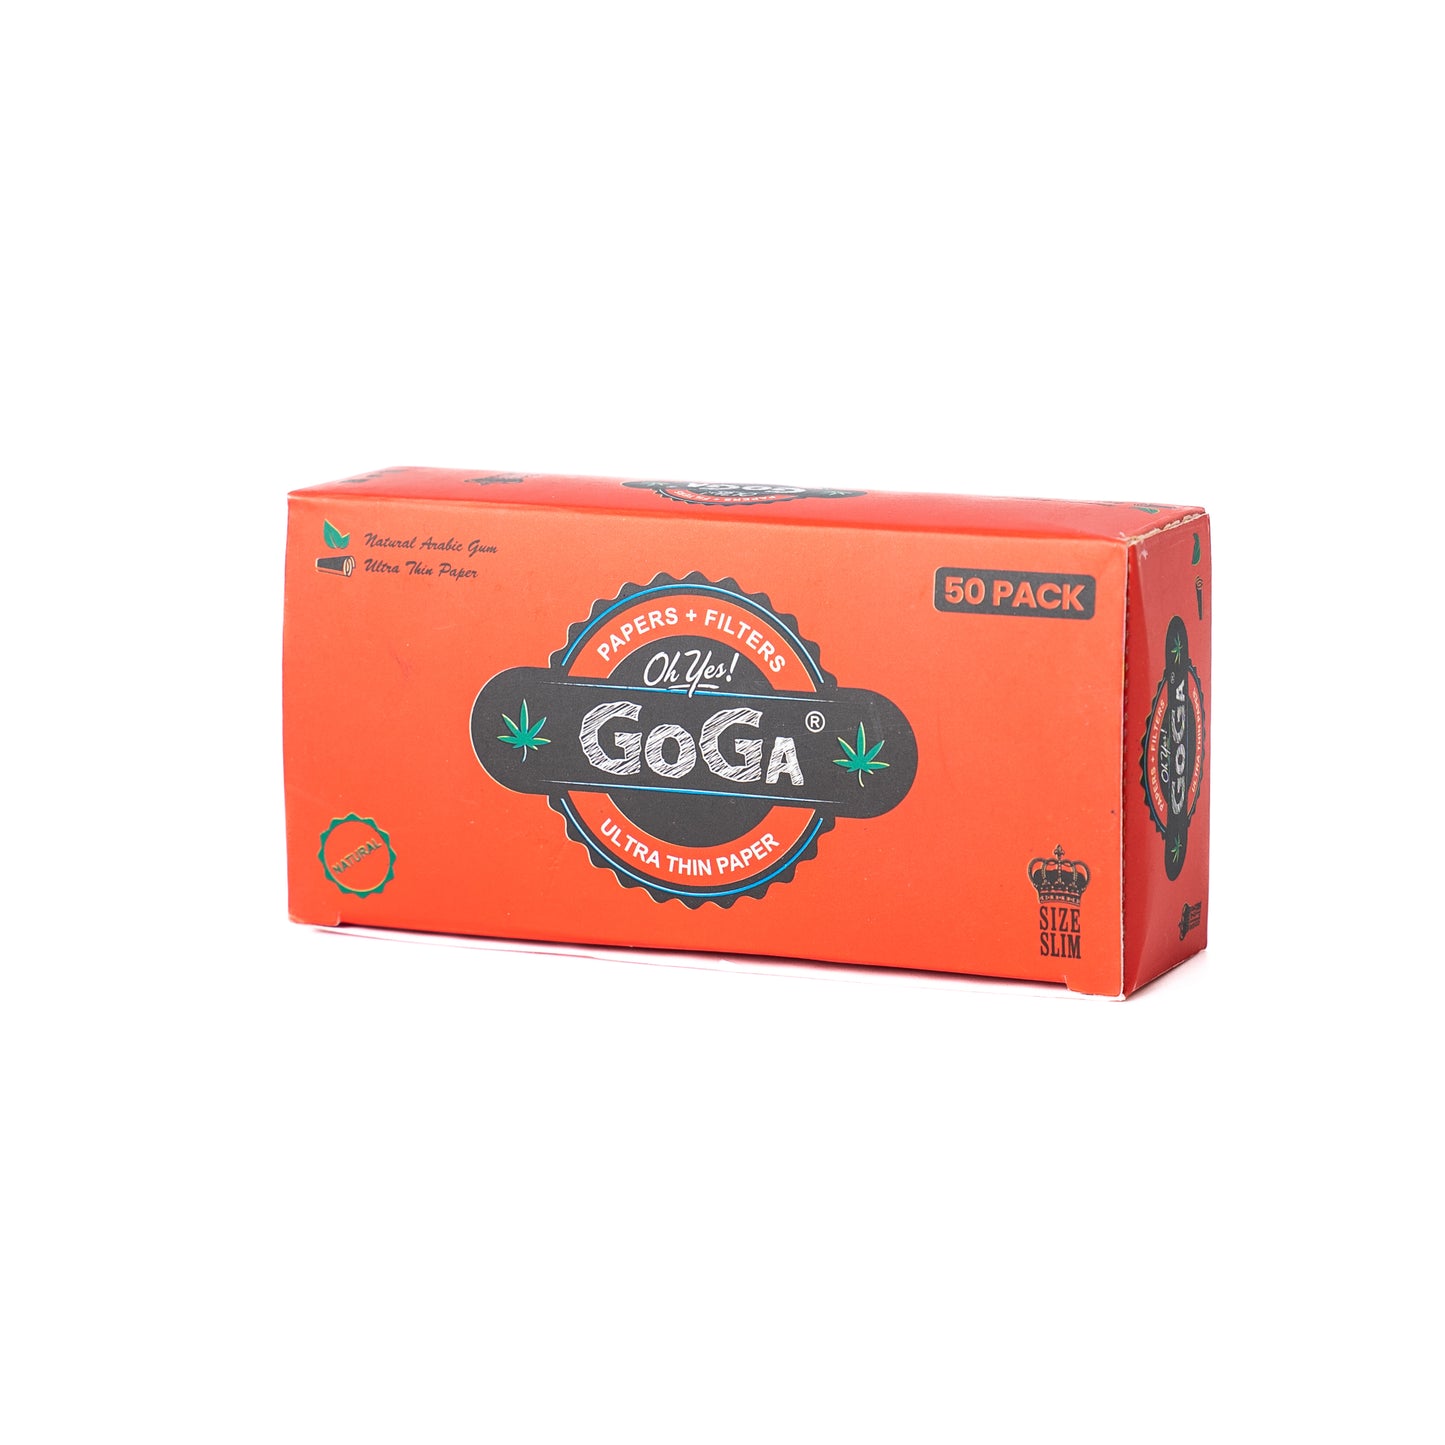 गोगा दिन में तीन बार सफेद धूम्रपान कागज - 50 पैक